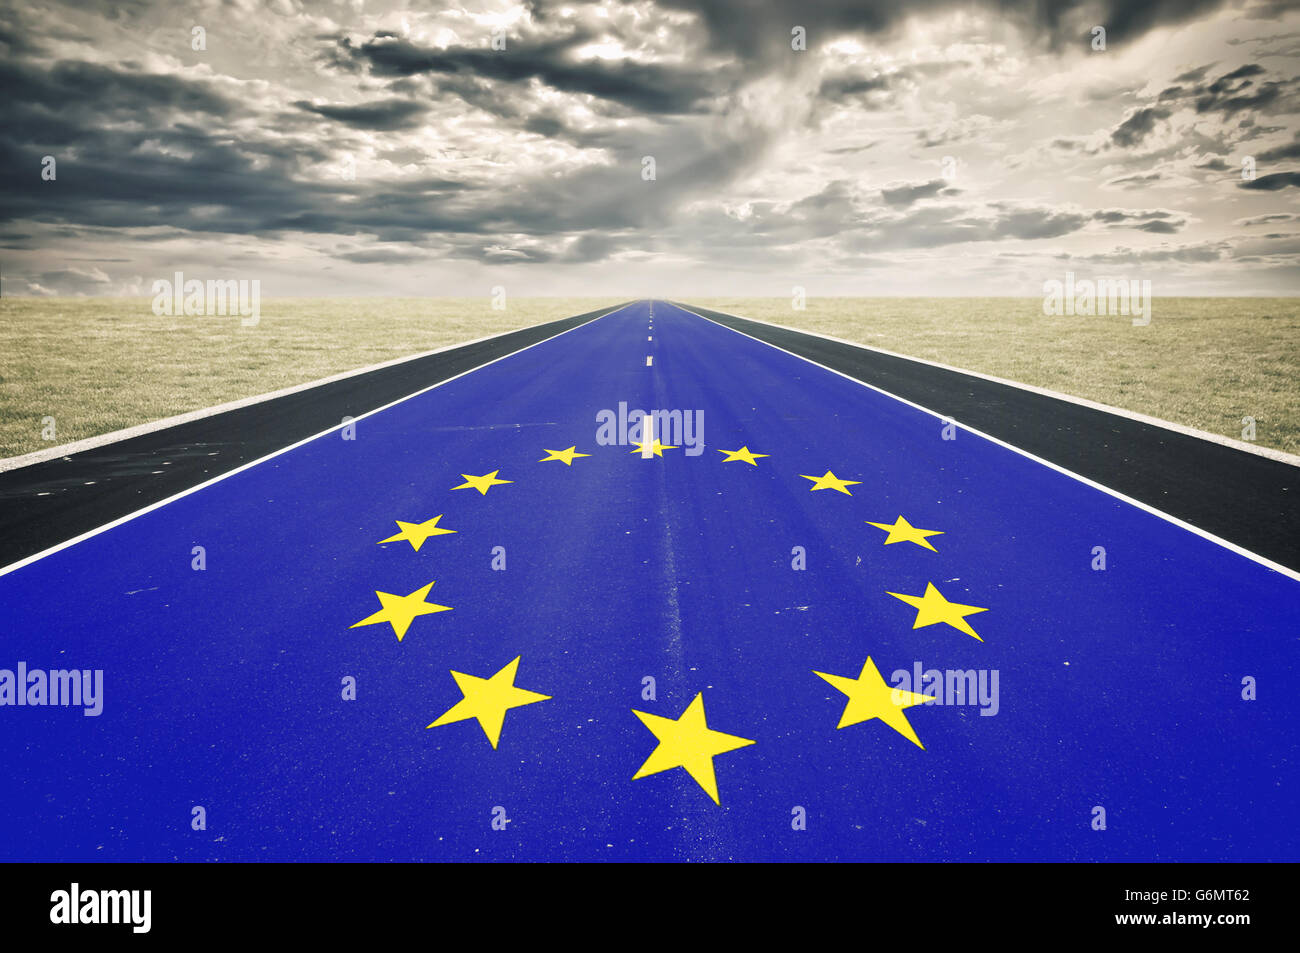 Krisenkonzept, dunkle Wolken, Europaflagge, Straße Perspektive Stockfoto